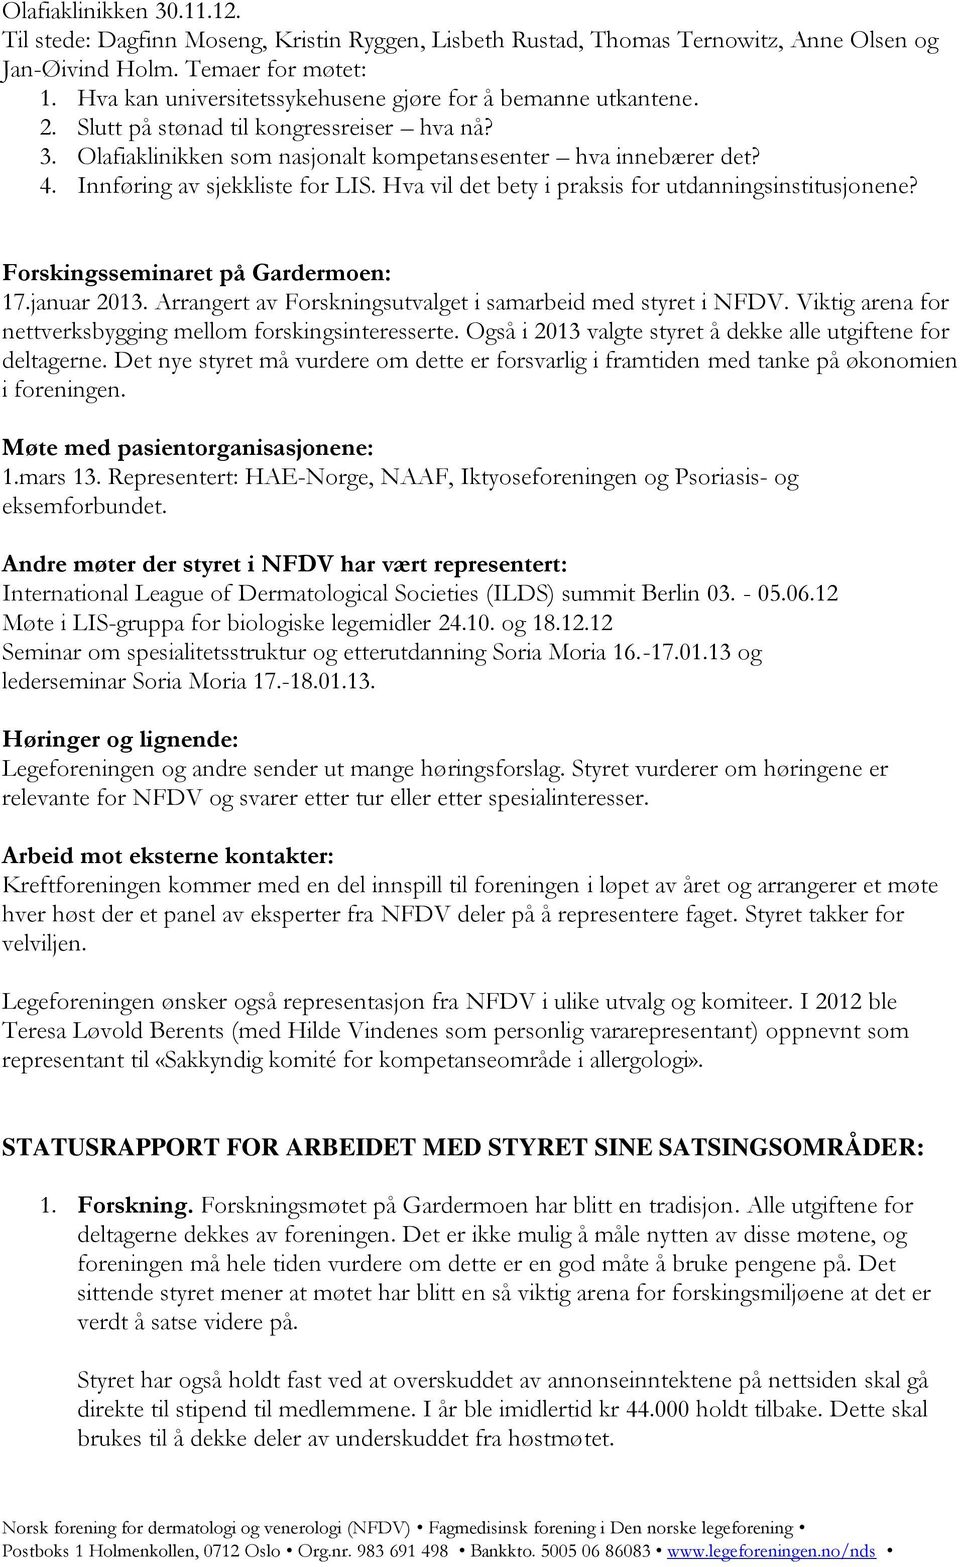 Innføring av sjekkliste for LIS. Hva vil det bety i praksis for utdanningsinstitusjonene? Forskingsseminaret på Gardermoen: 17.januar 2013.